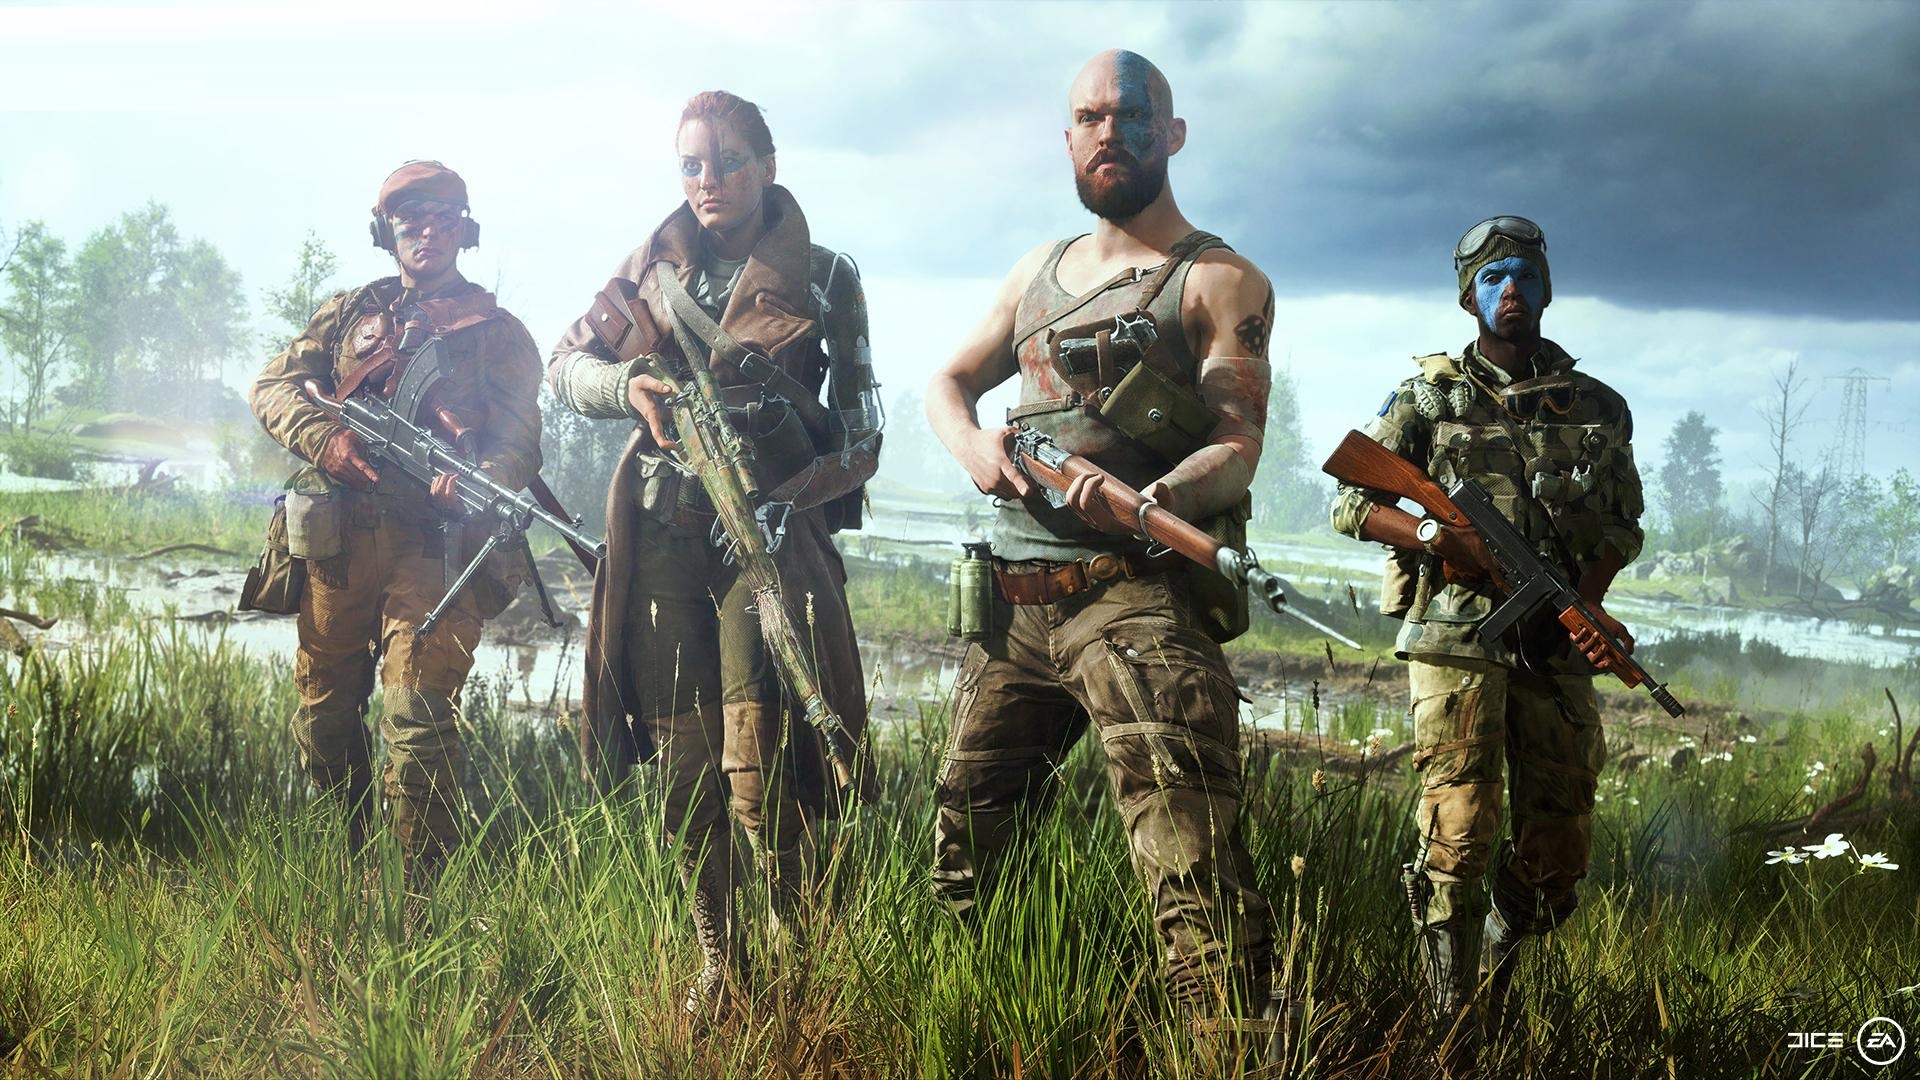 Battlefield 4 para PS4 - EA - Jogos de Ação - Magazine Luiza